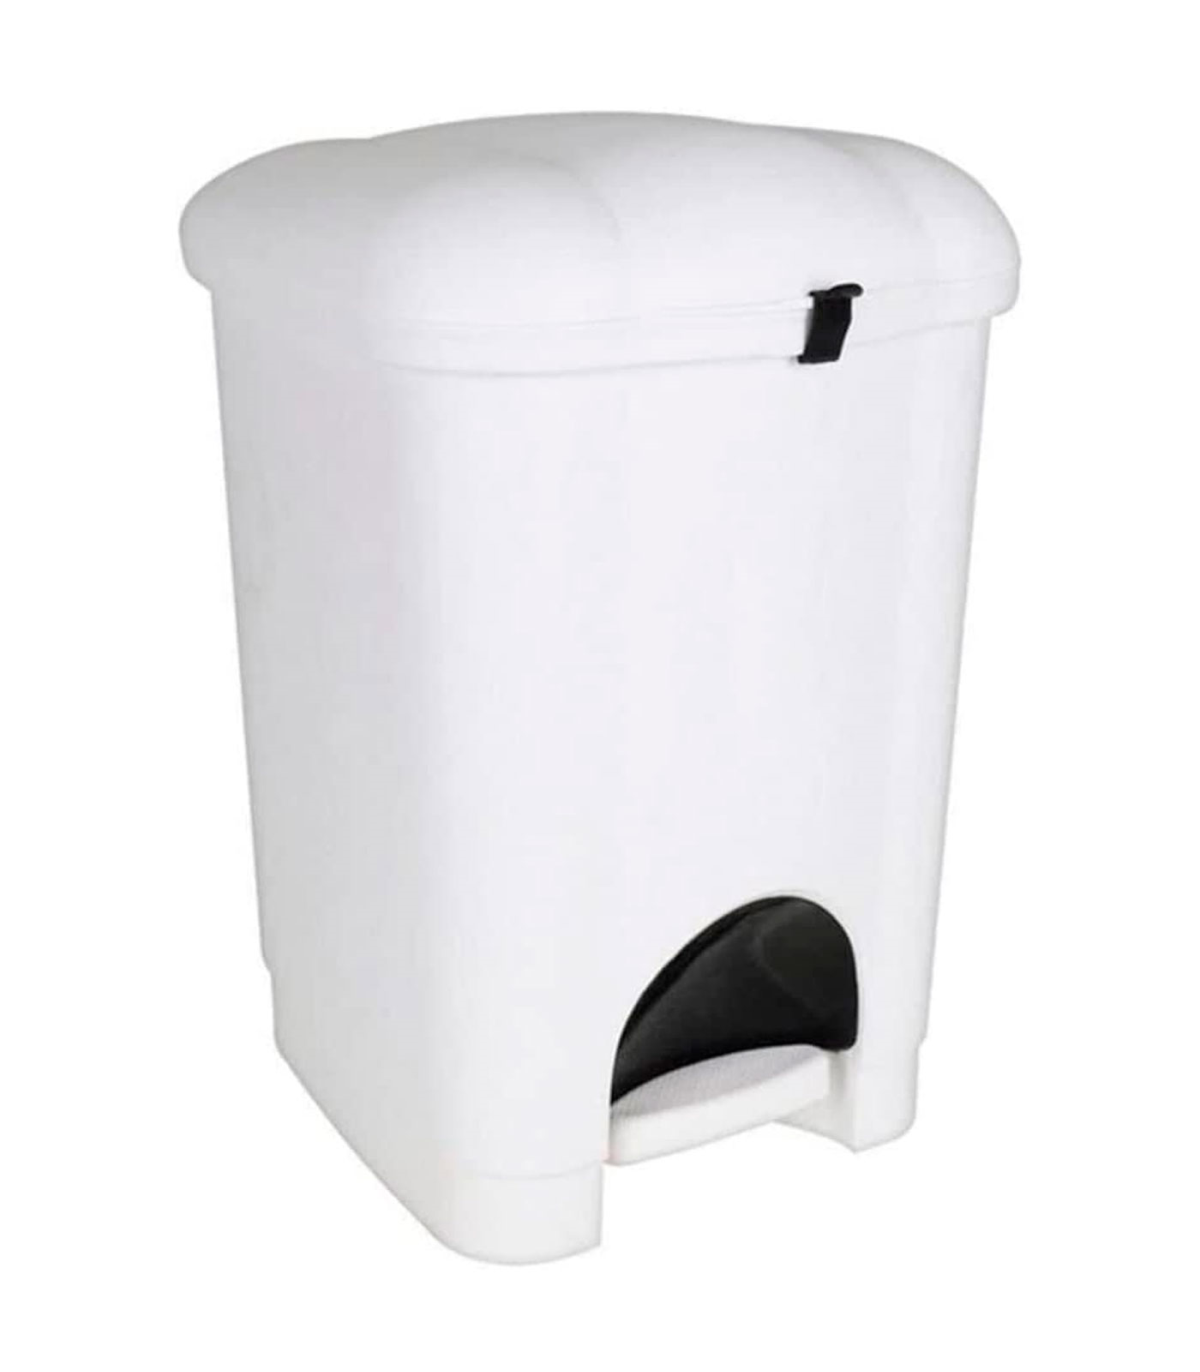 Tradineur - Bandeja cubertero de plástico, de color blanco, de 4,5 x 26,5 x  33,5 cm, Recipiente para ordenación y almacenamiento